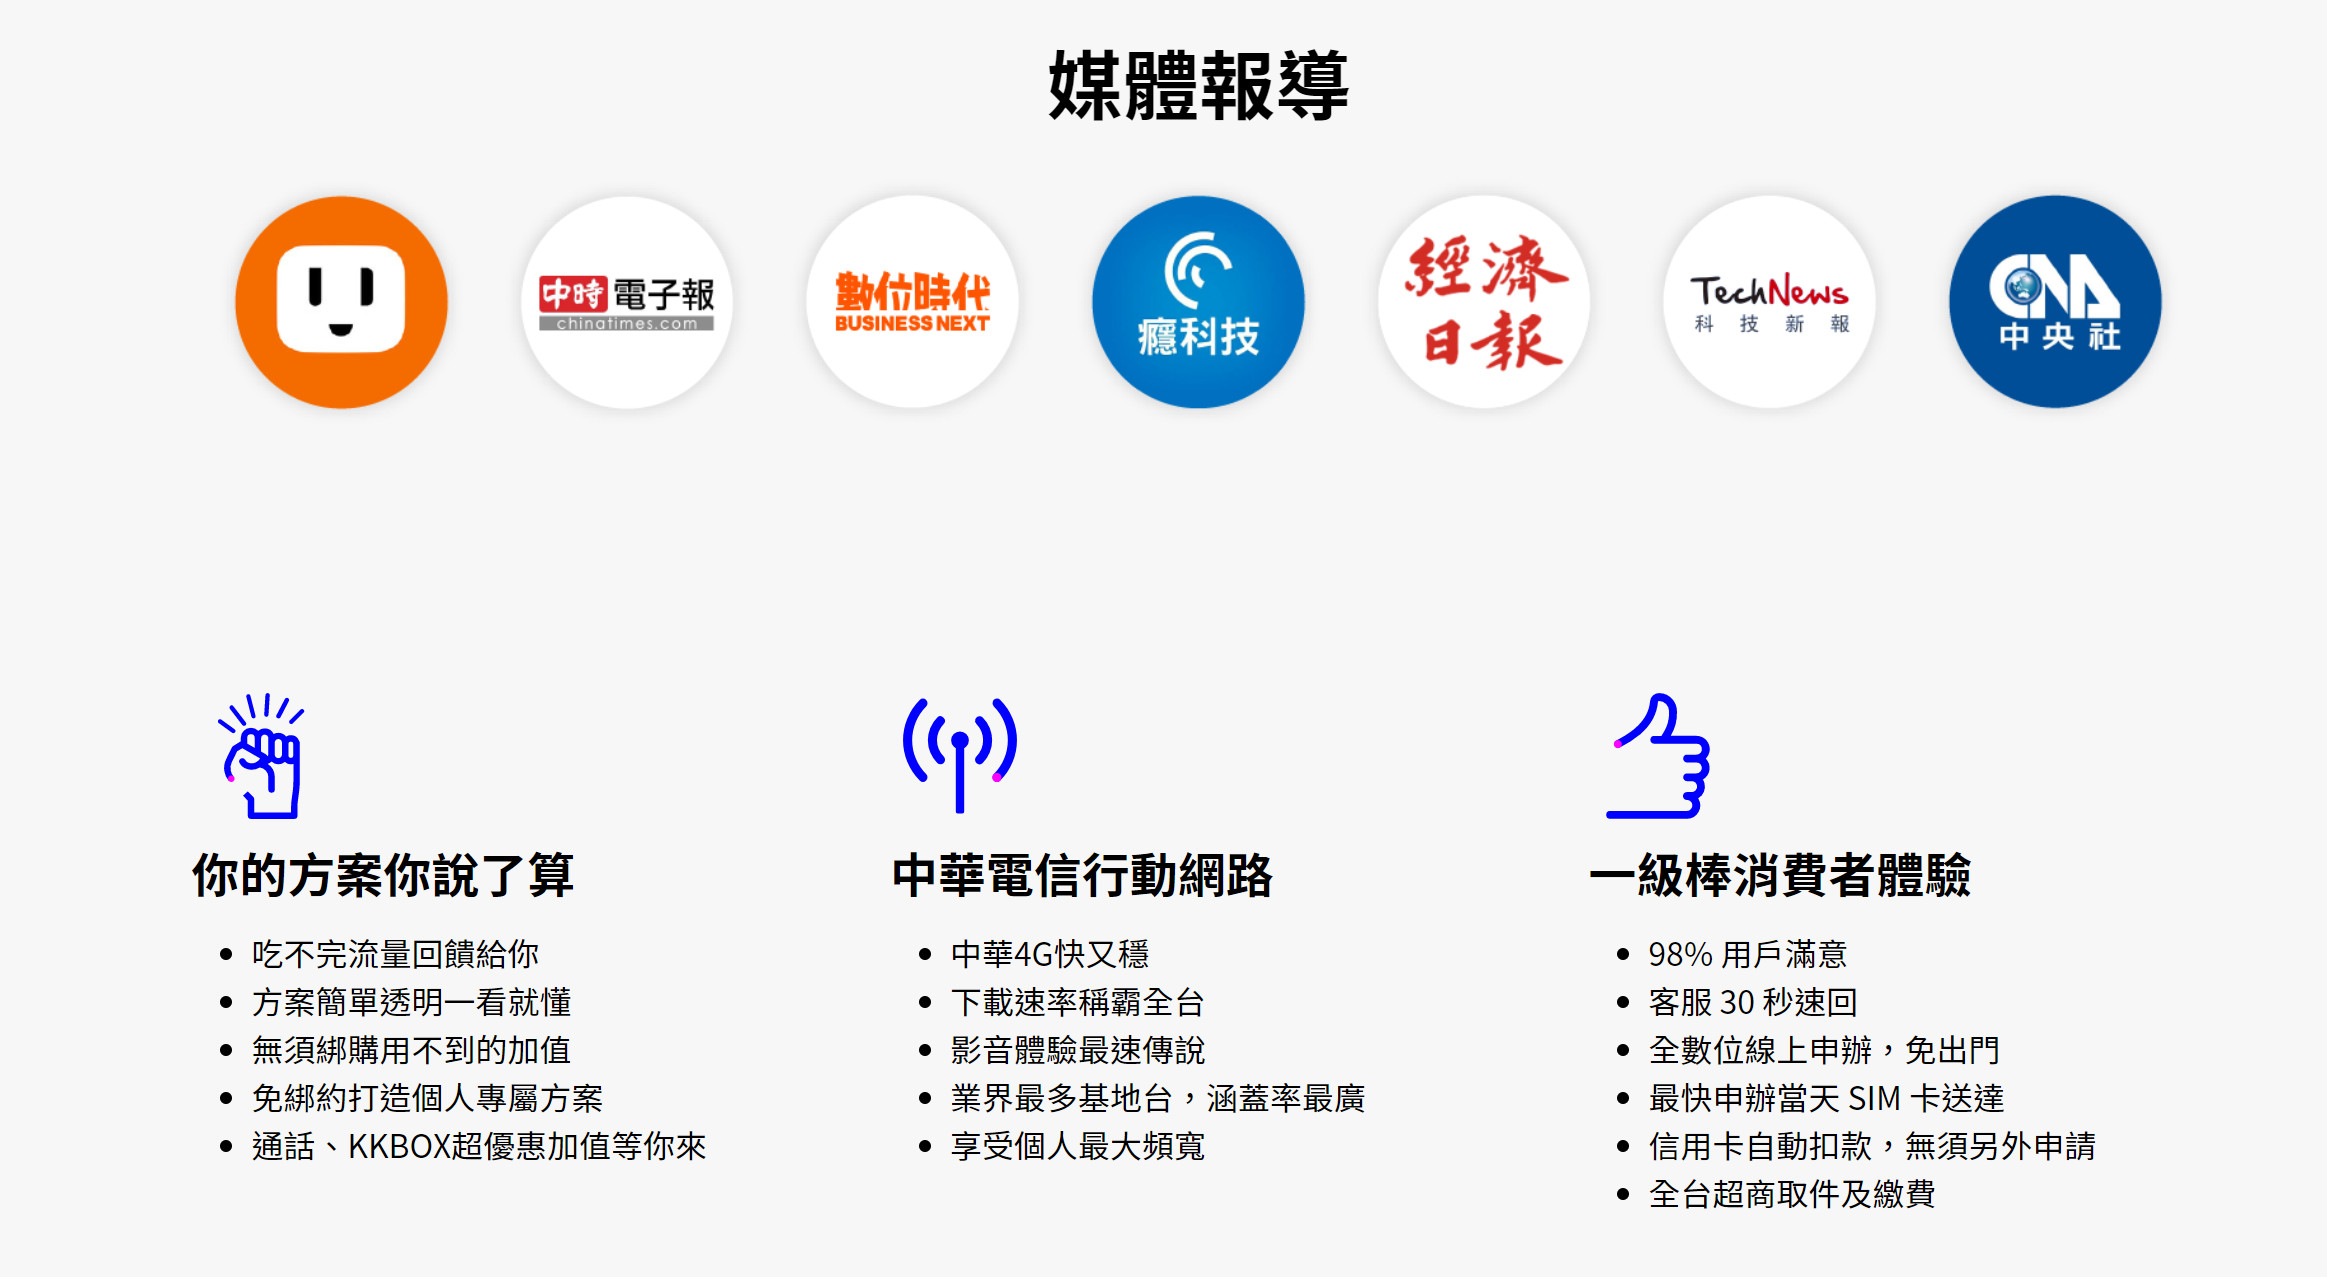 【無框行動】新春專案，中華電信大4G網路吃到飽466元，低流量只要166元!超適合搭配台灣之星雙11專案。 - 無框行動 - 敗家達人推薦